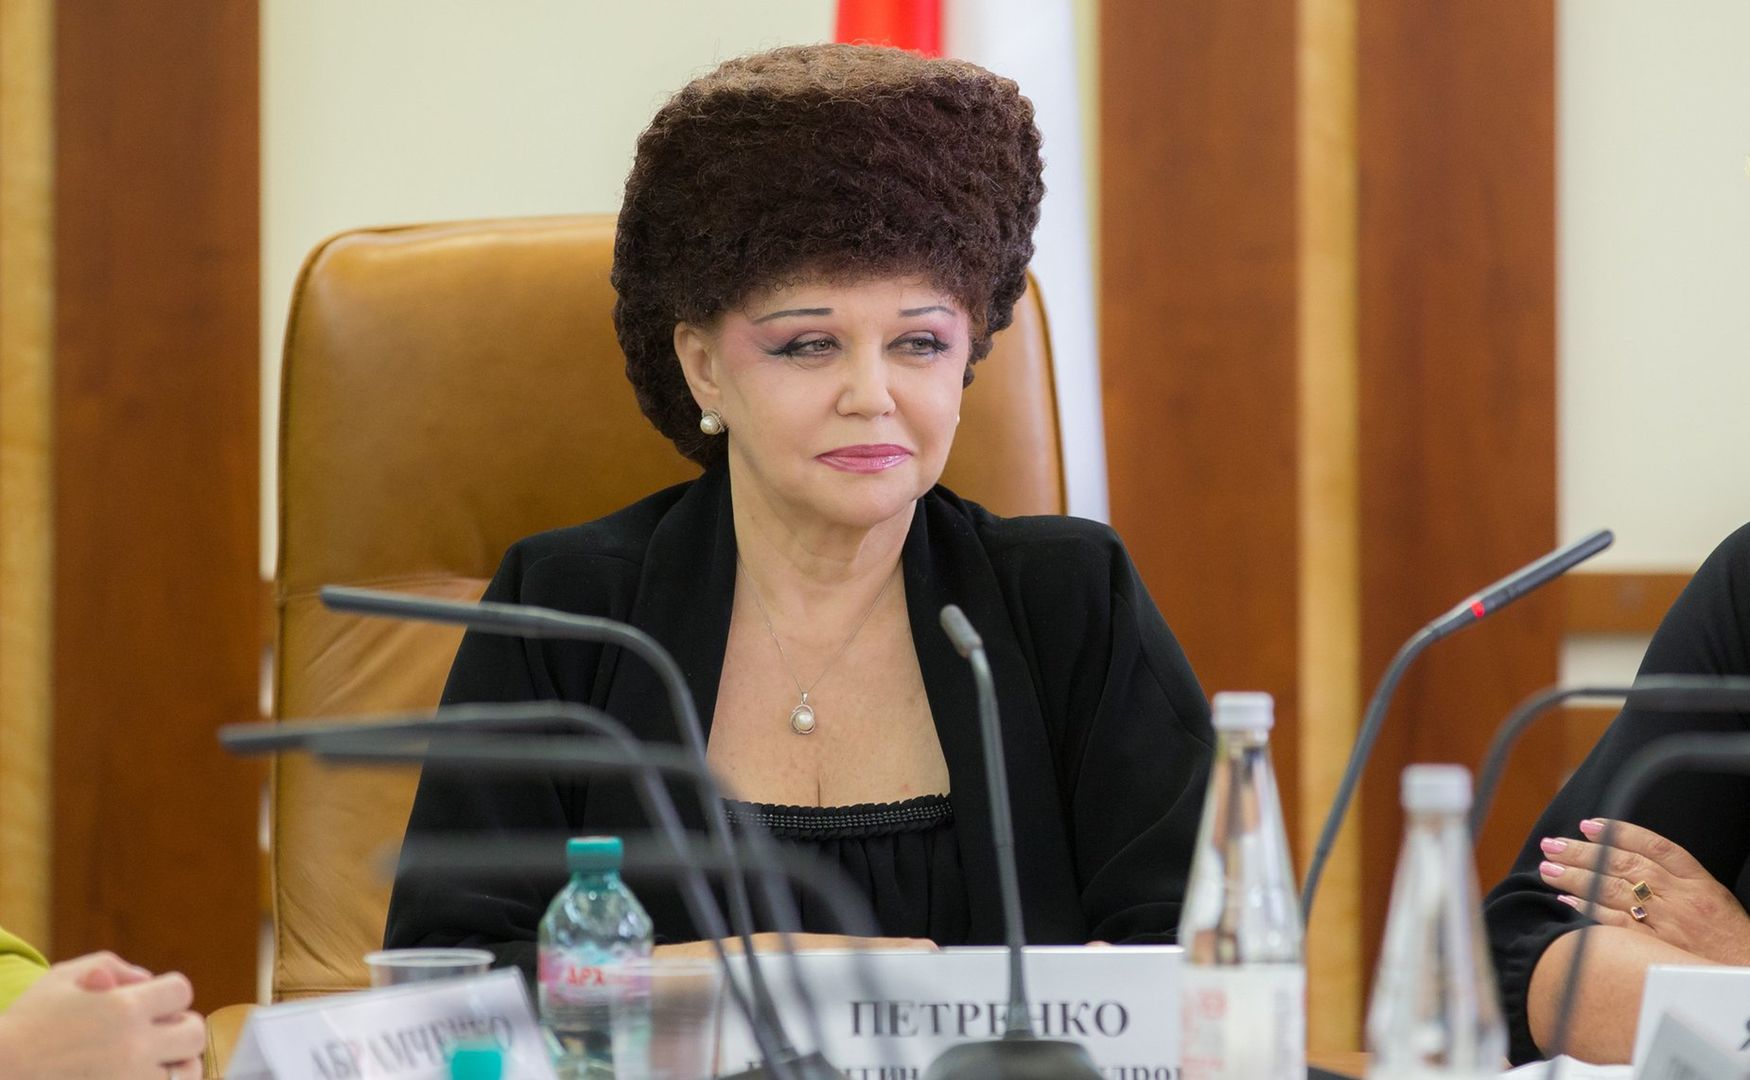 Wyjątkowe włosy rosyjskiej senator